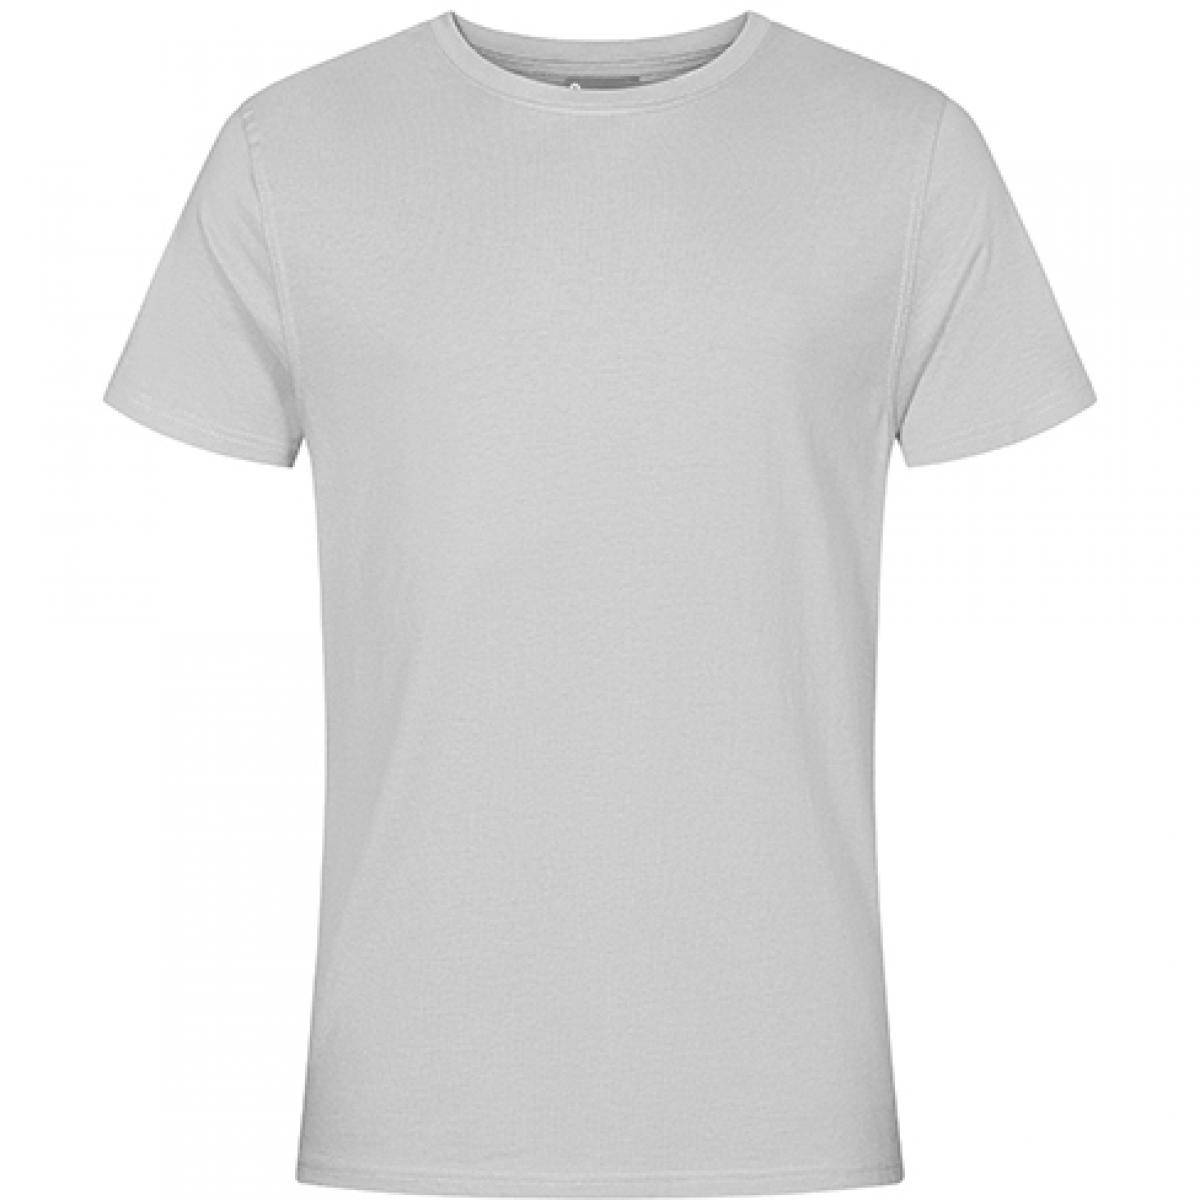 Hersteller: EXCD by Promodoro Herstellernummer: 3077 Artikelbezeichnung: Herren T-Shirt, Single-Jersey Farbe: New Light Grey (Solid)